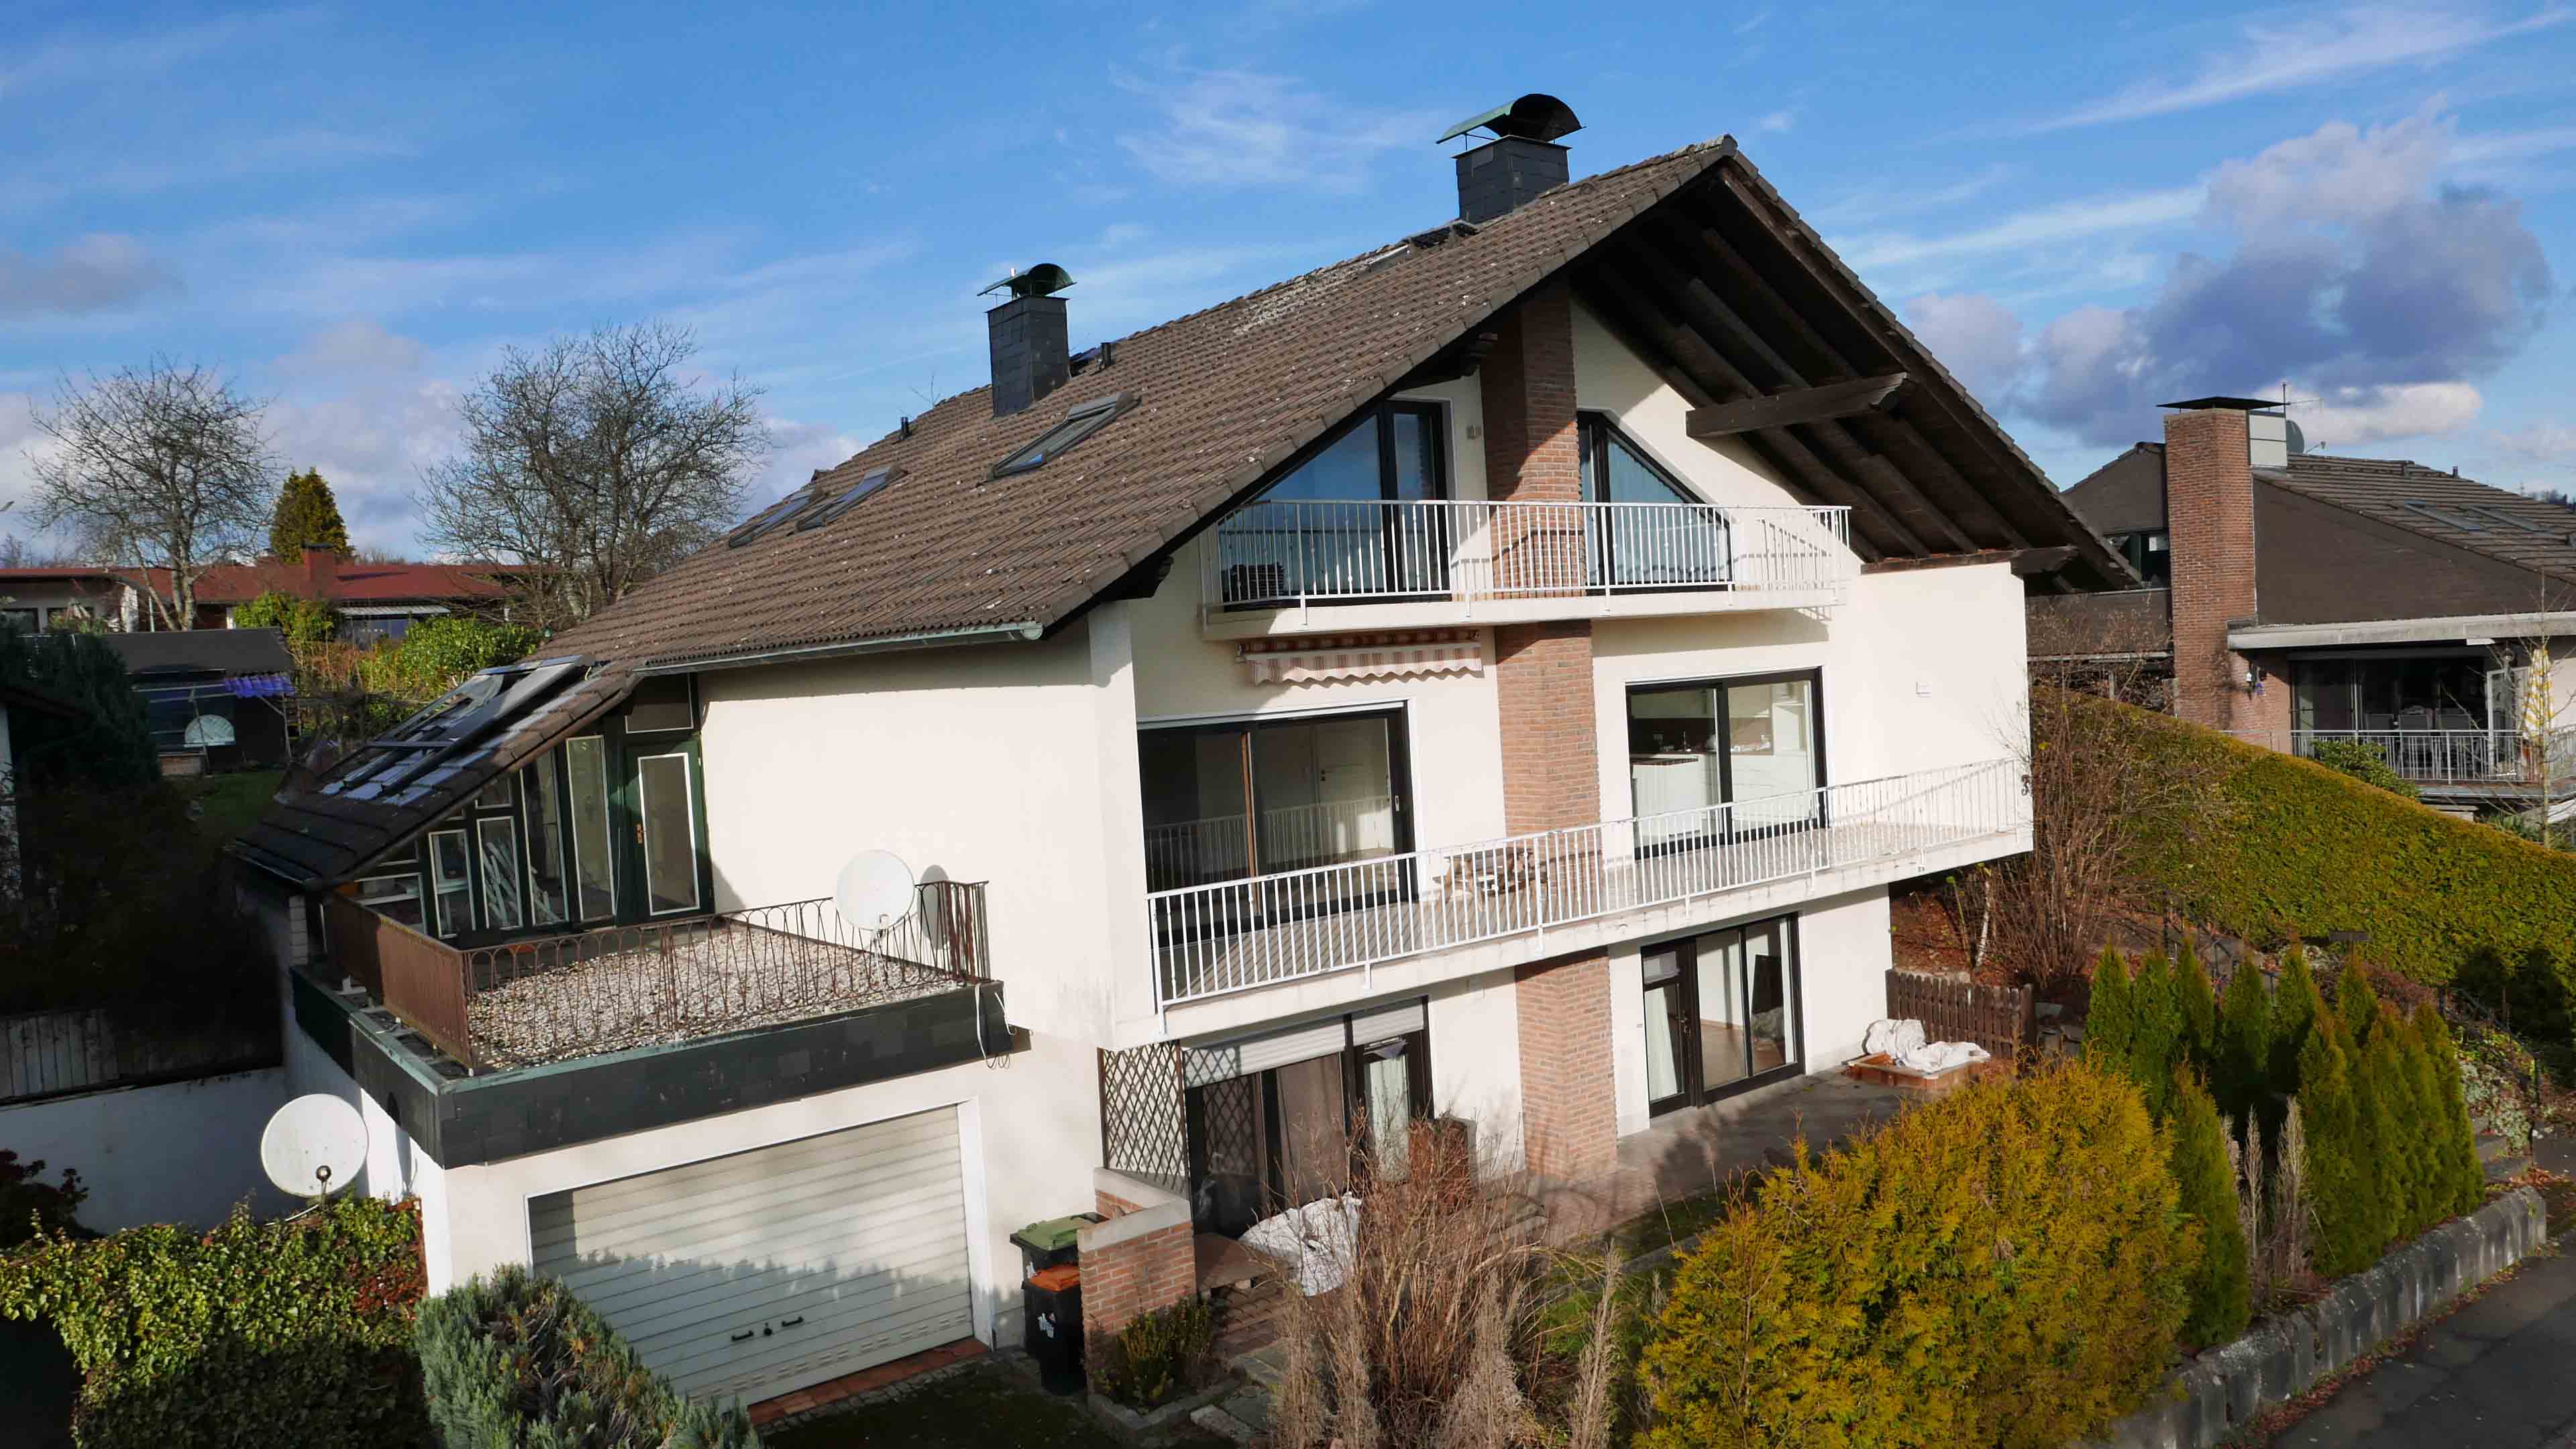 Morsbach: Beste Lage, moderne Ausstattung EFH mit ELW, großer Dachüberstand schützt die Balkone